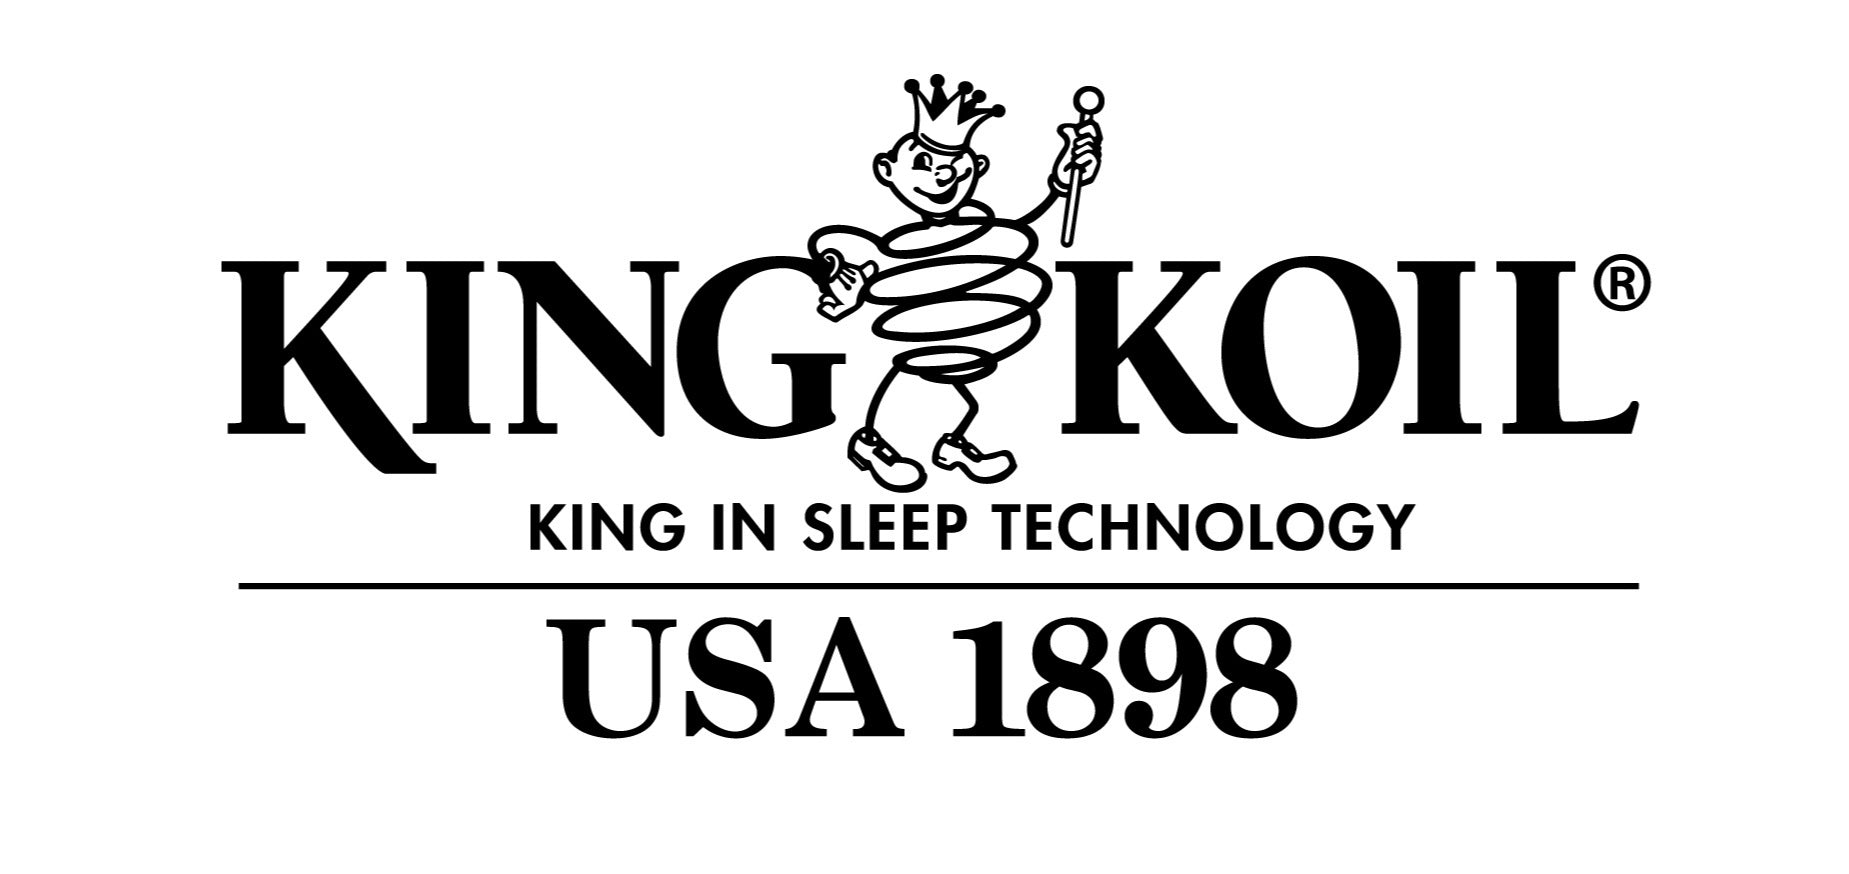 King Koil Posture Bond Classic Mattress - King